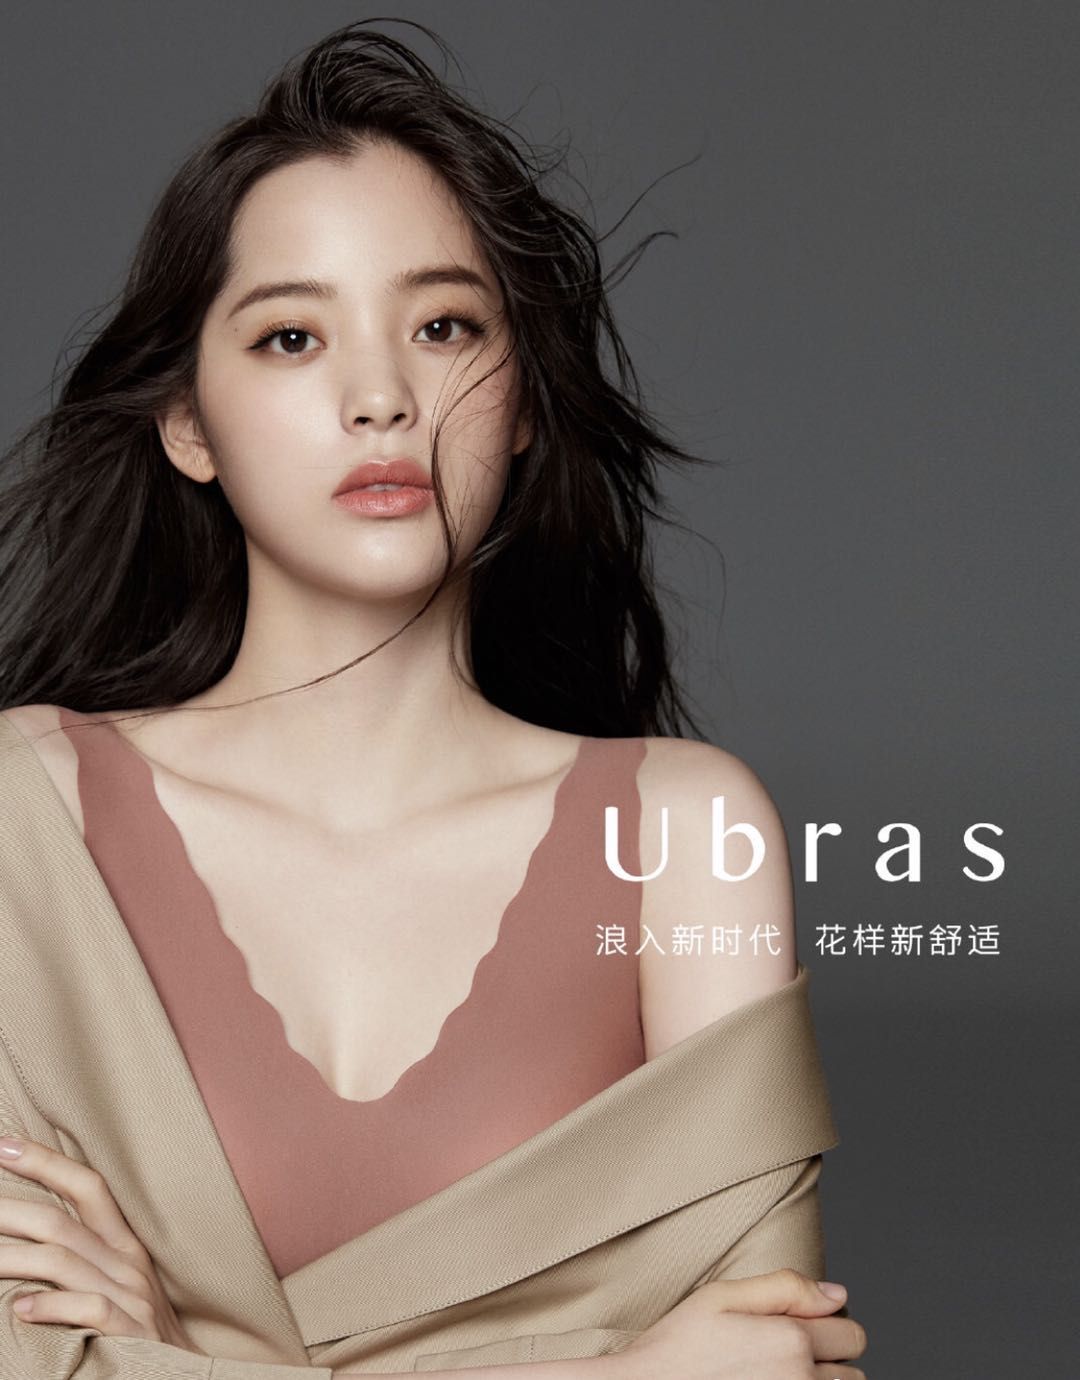 欧阳娜娜代言的国产内衣品牌Ubras完成数亿元B+轮融资